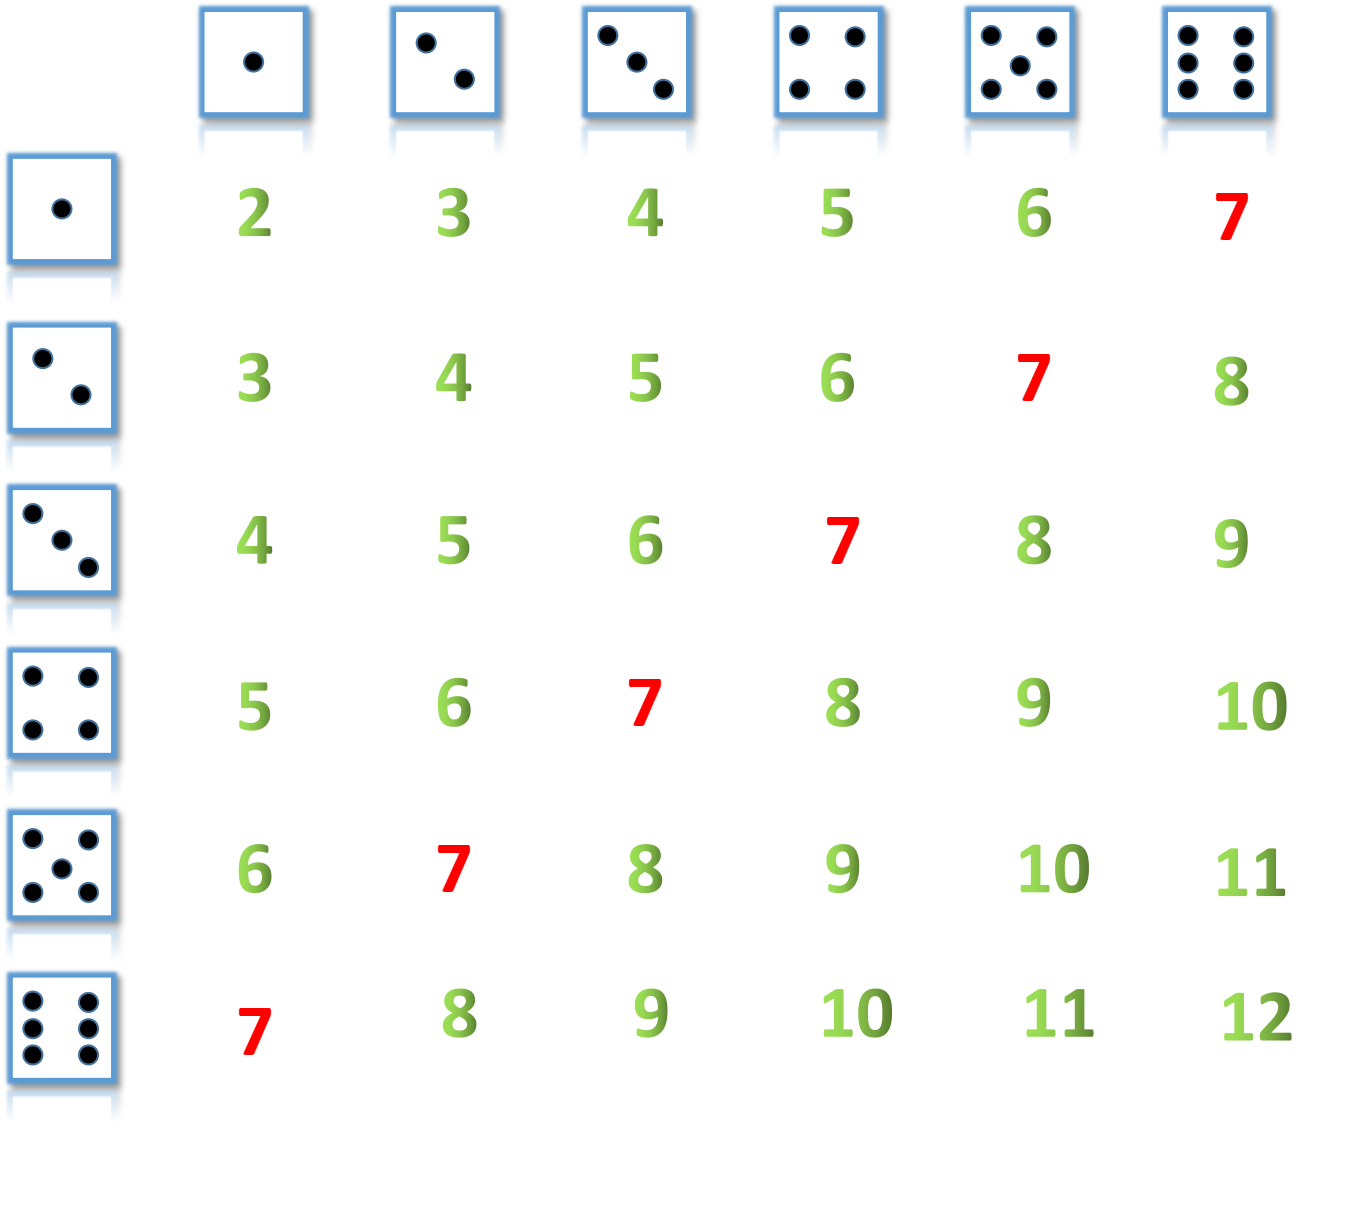 通过简单的掷骰子游戏,理解物理学中最复杂的概念之一,统计力学